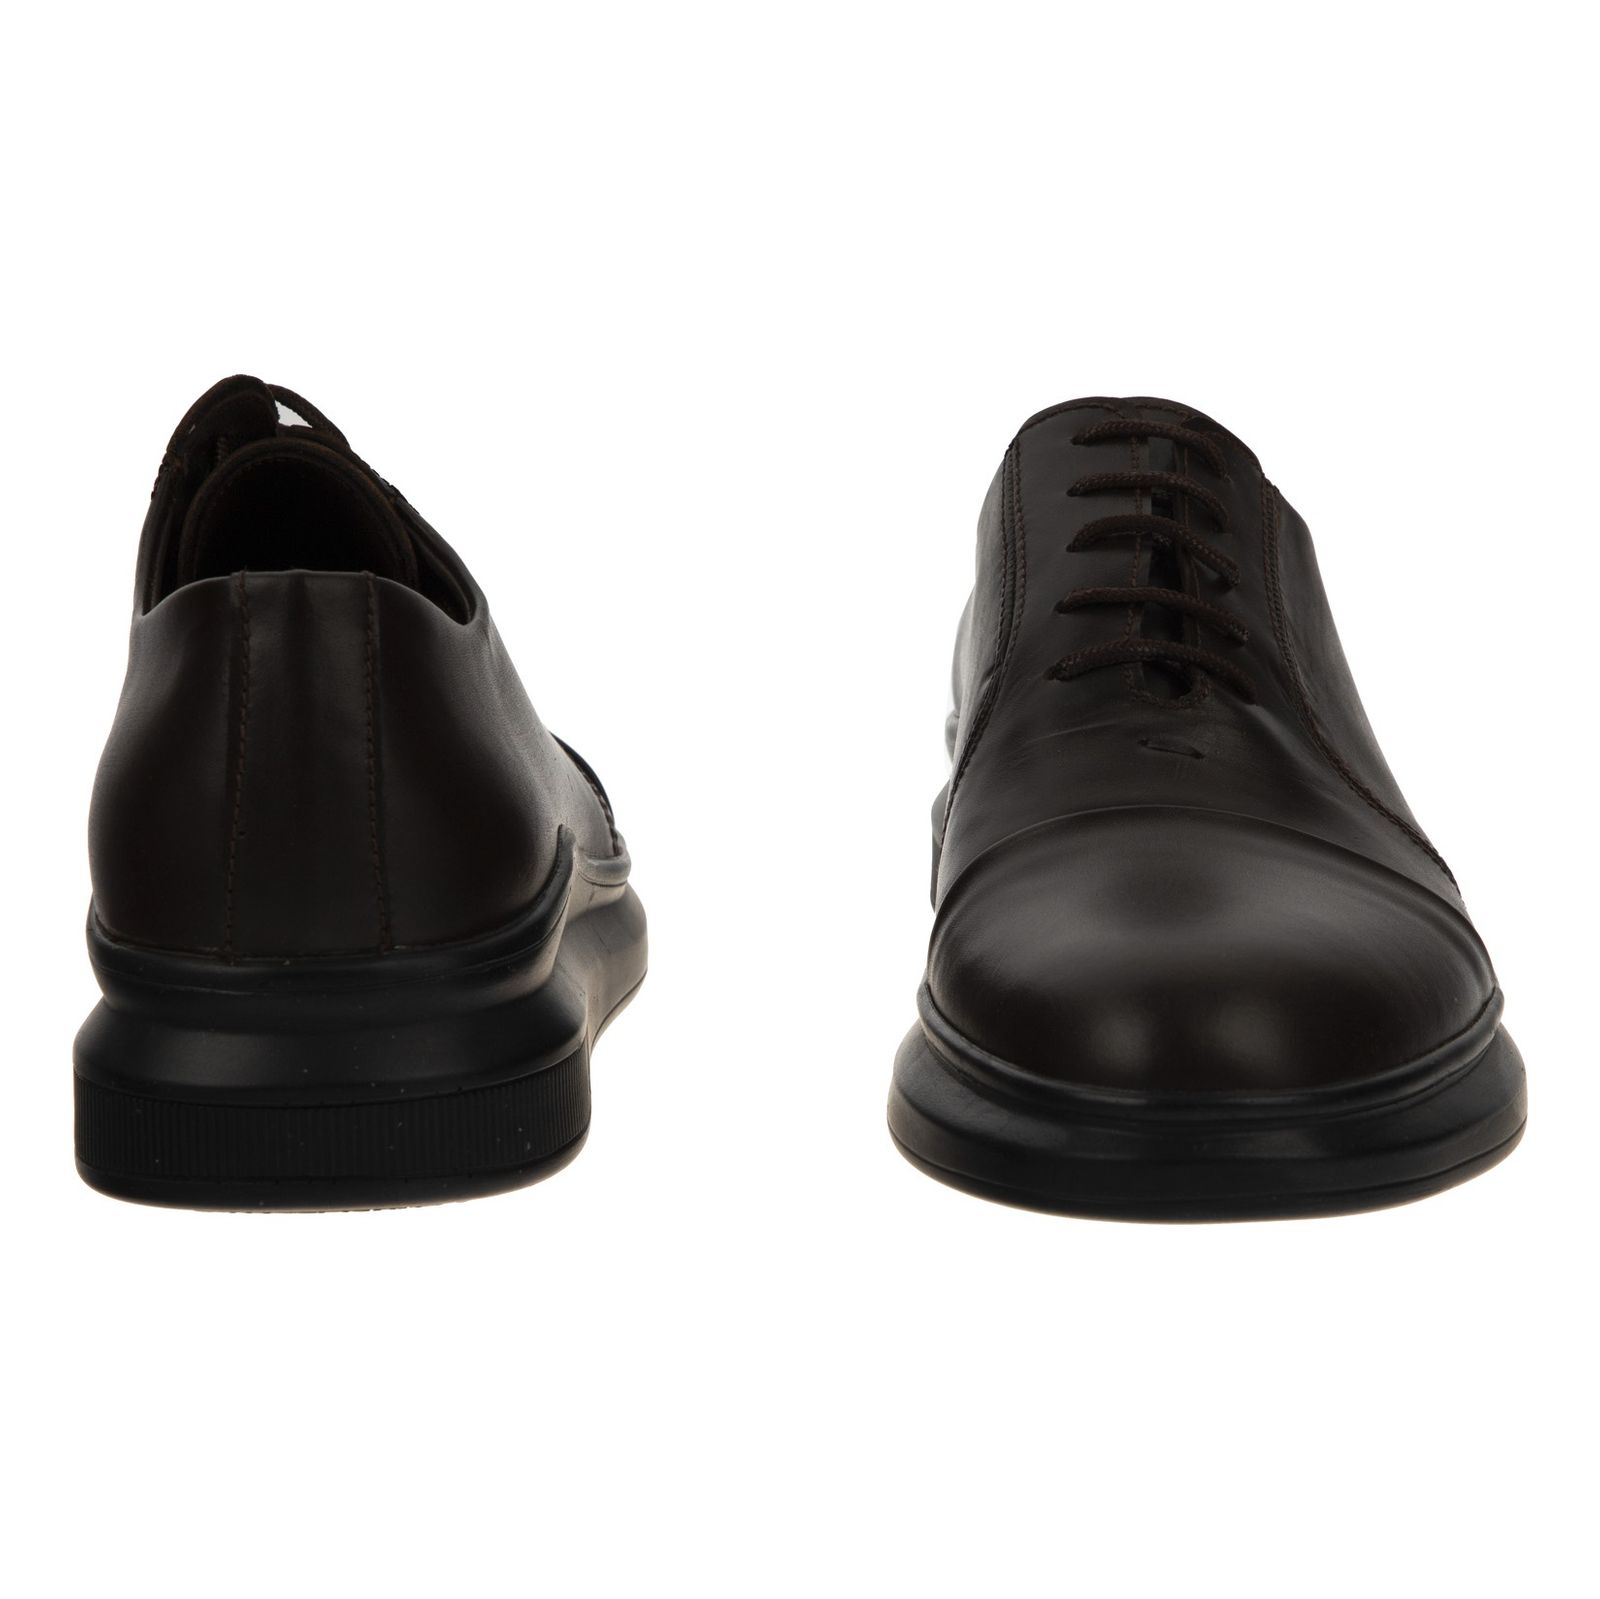 کفش مردانه ریمکس مدل 7230A503-104 - قهوه ای - 5